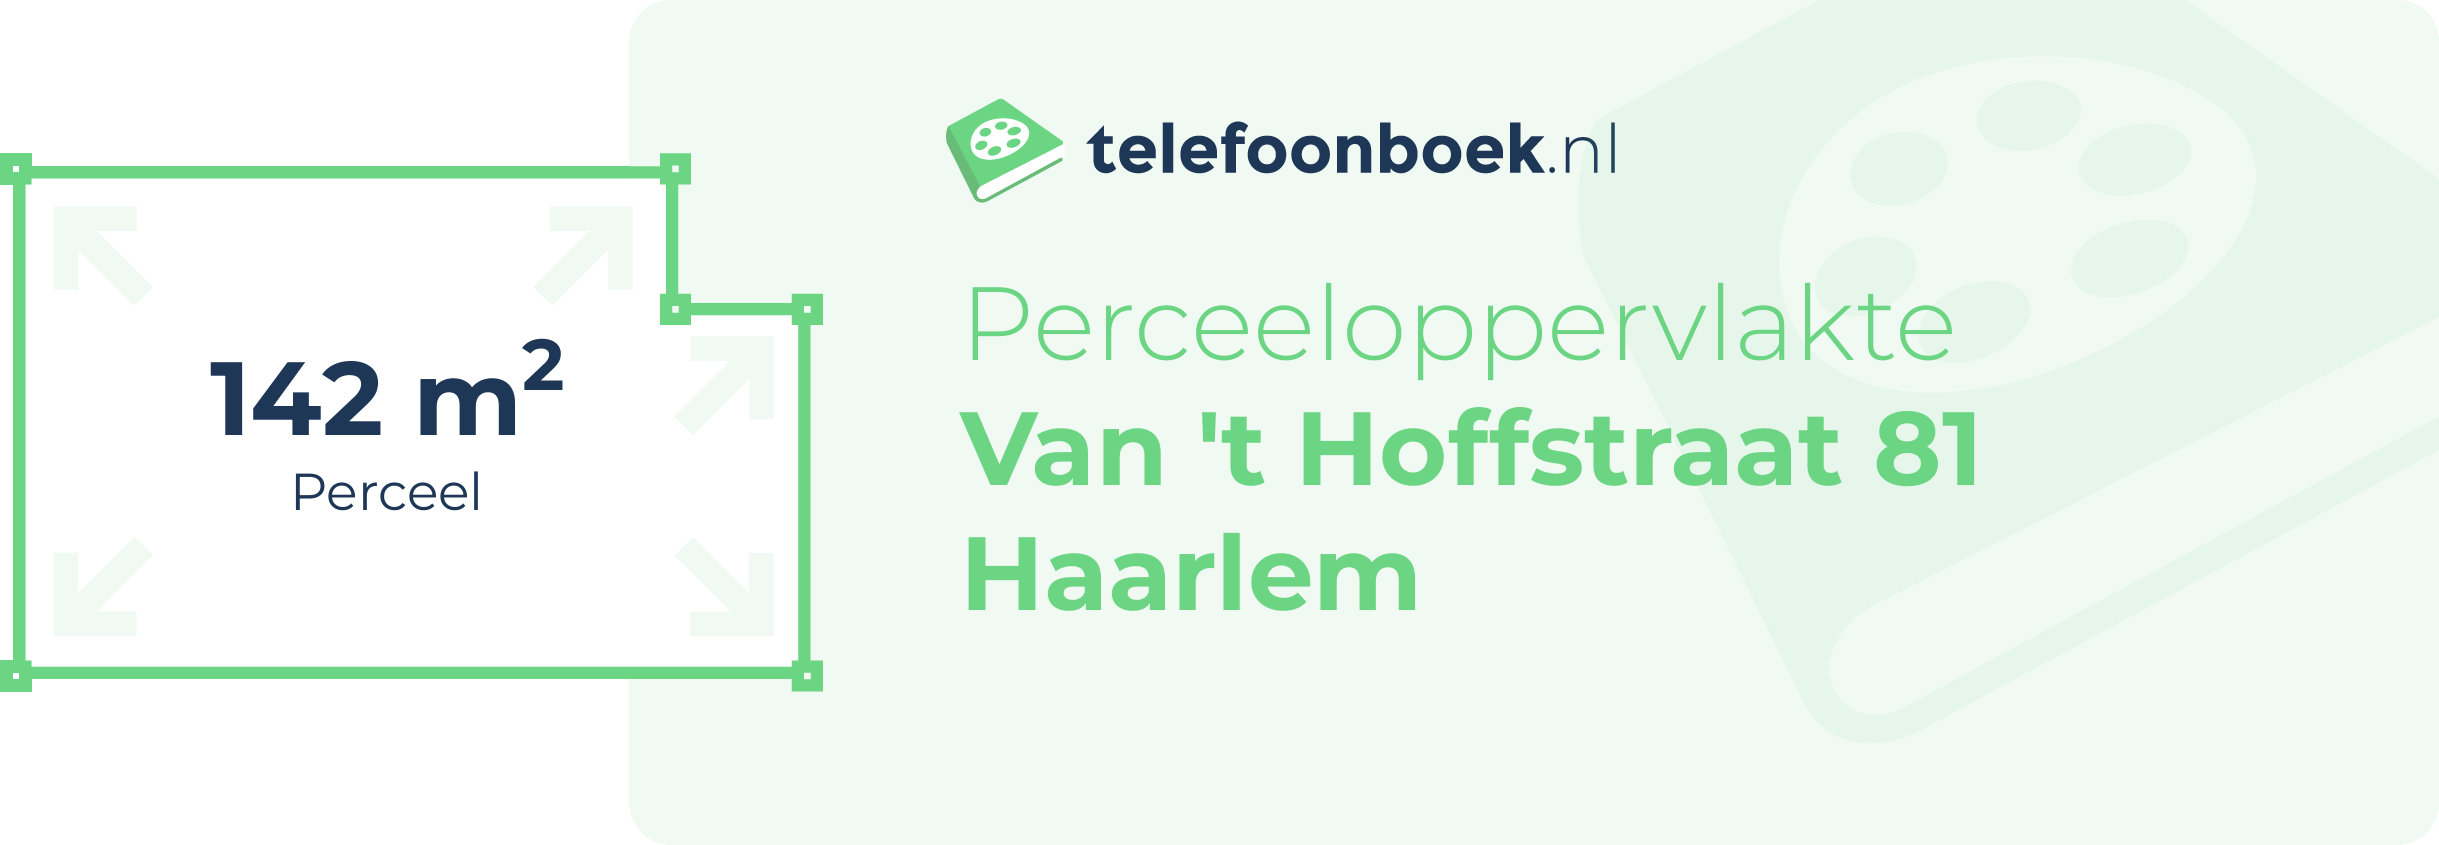 Perceeloppervlakte Van 't Hoffstraat 81 Haarlem